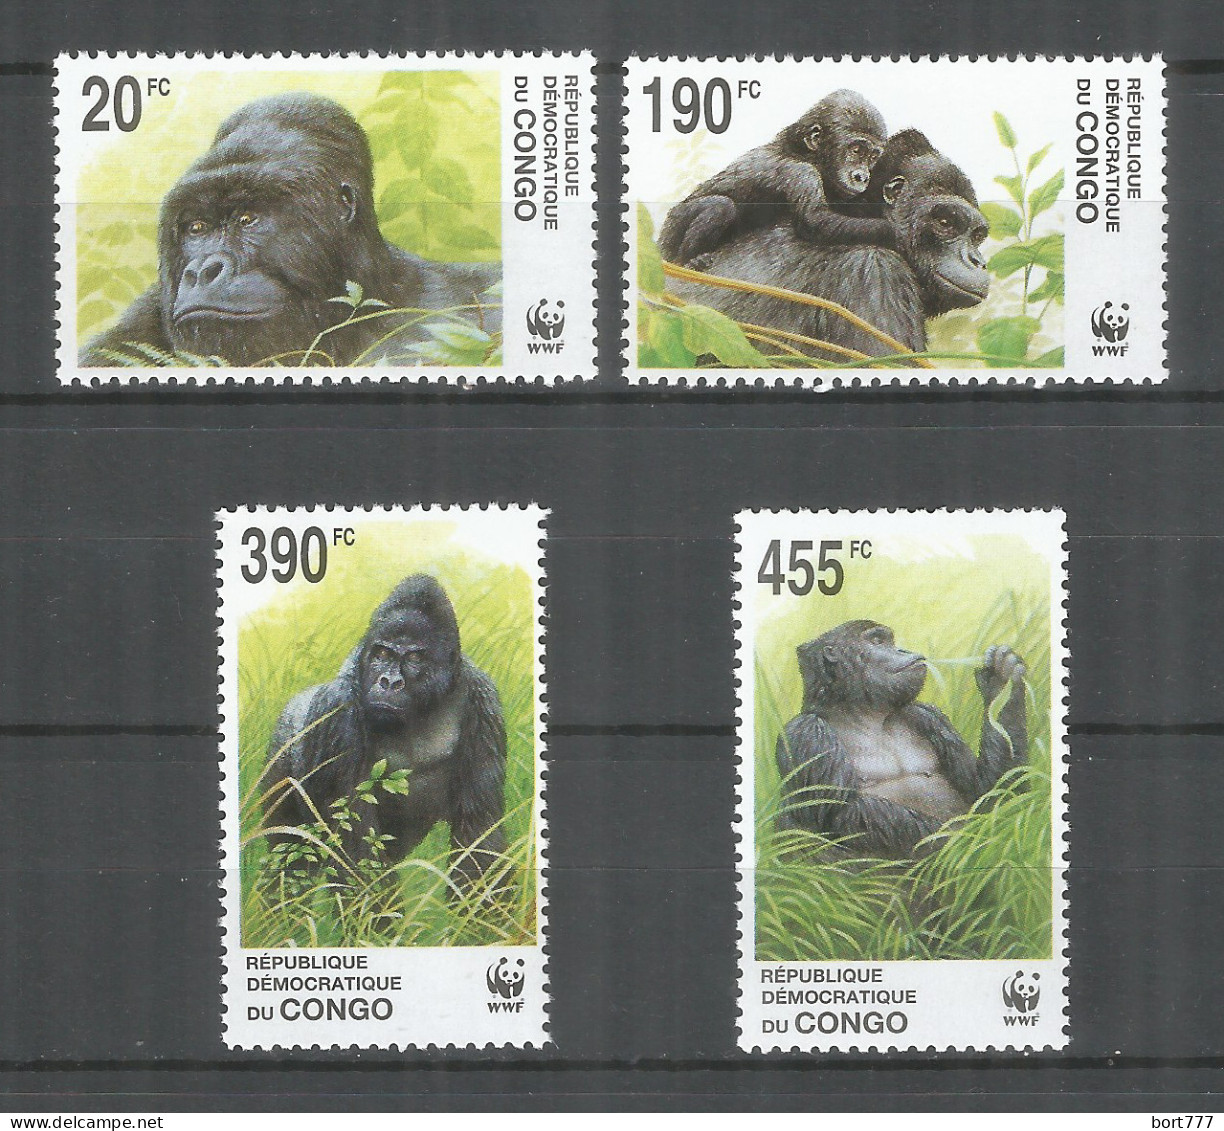 Congo 2002 Year Mint Stamps MNH(**) Monkey WWF - Neufs